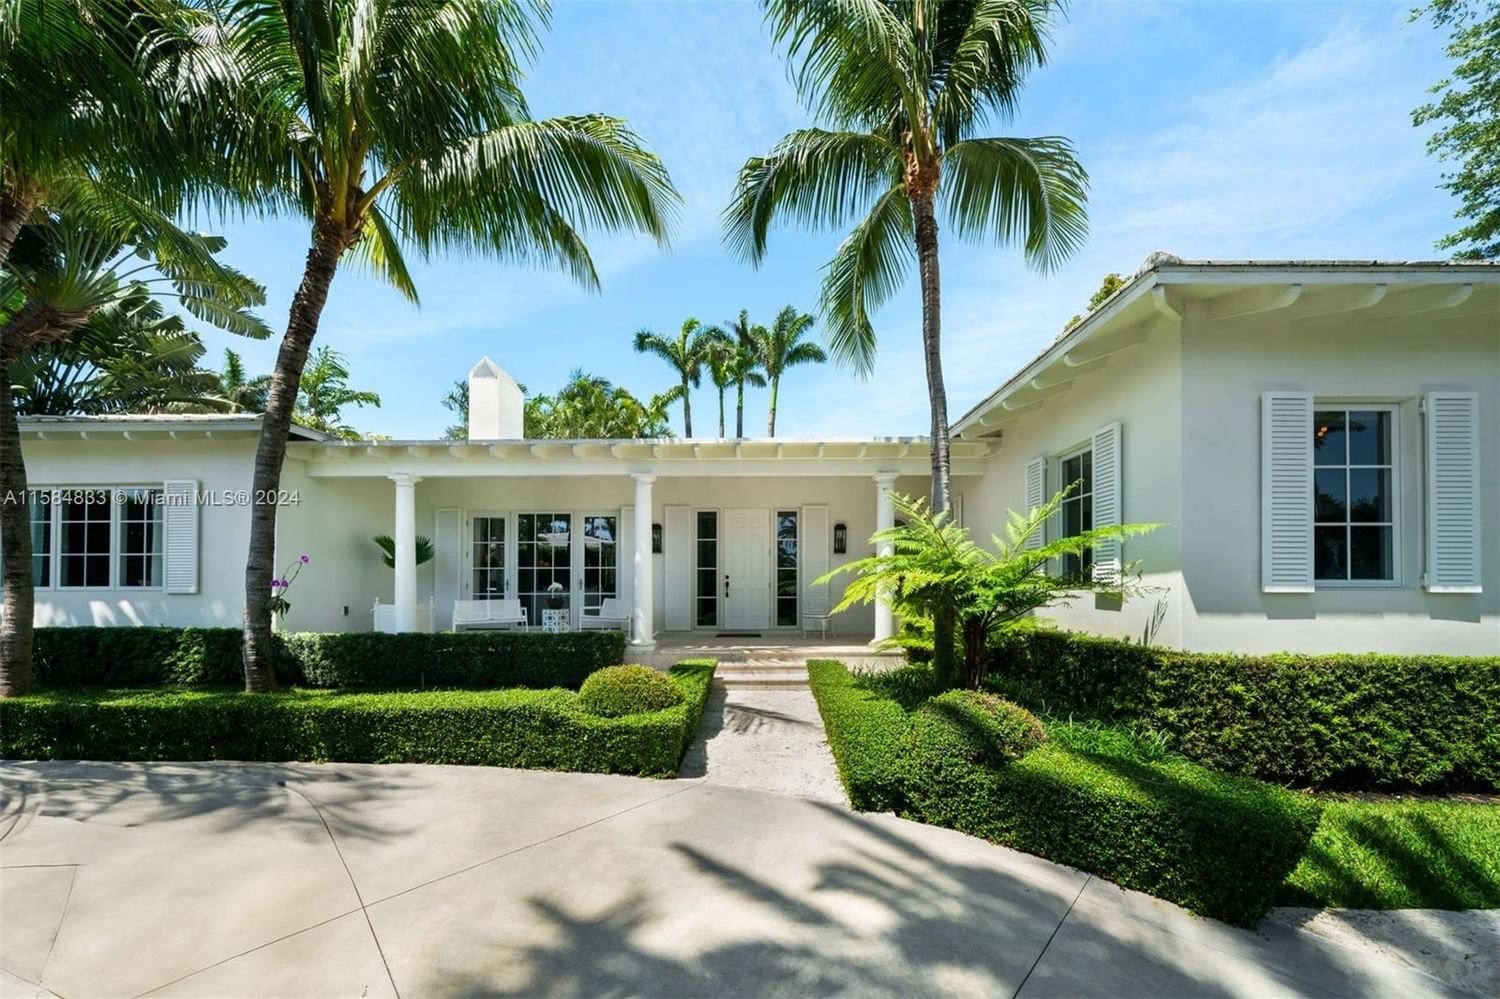 Real estate property located at 6666 Pinetree Ln, Miami-Dade County, LA GORCE ISLAND, Miami Beach, FL